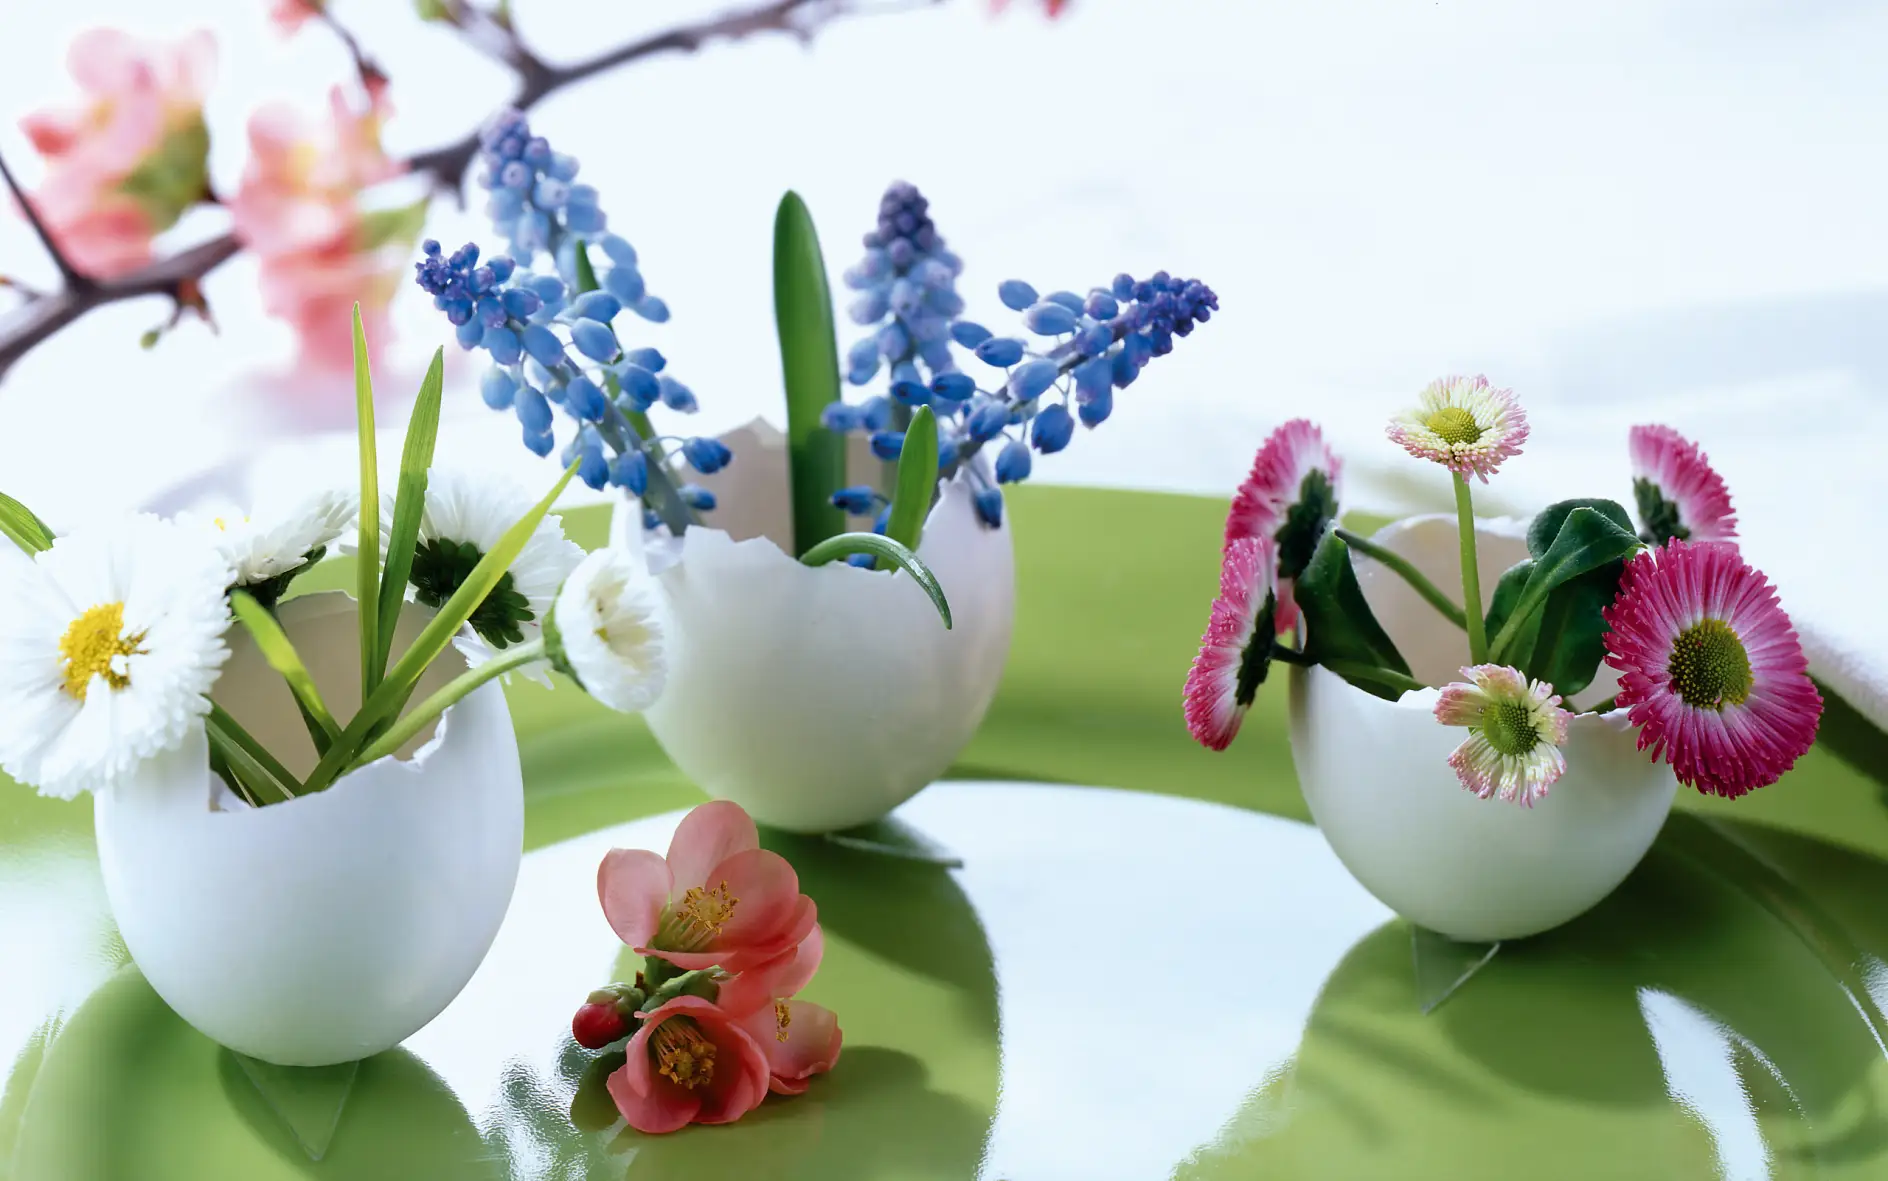 Und so geht’s: Jede Blumensorte bekommt ihre eigene kleine Eierschalen-Vase. Dazu vorsichtig drei weiße Eier im oberen Viertel aufschlagen und zu Mini-Vasen umfunktionieren – fertig.